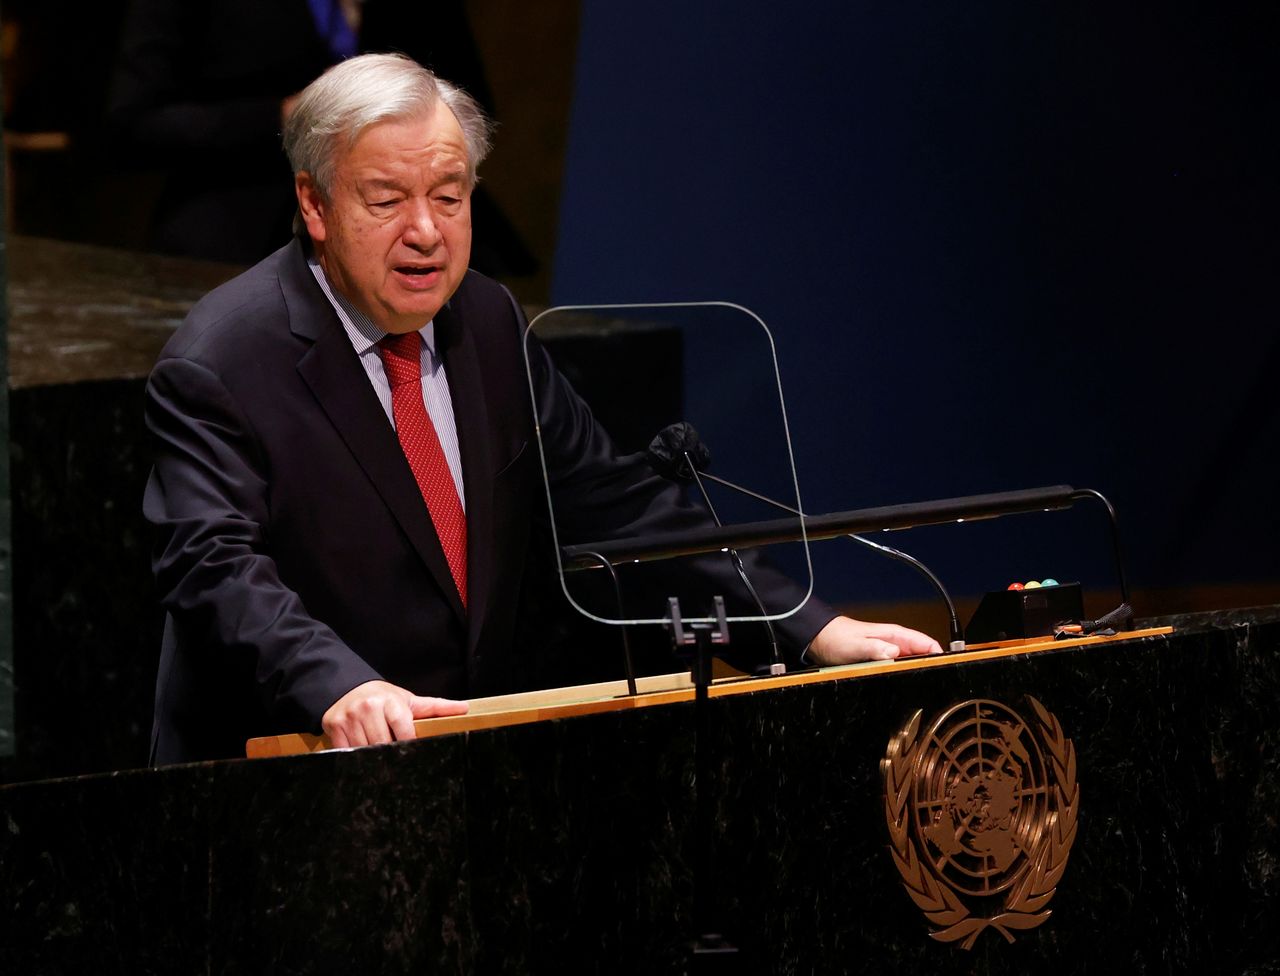 الأمين العام للأمم المتحدة أنطونيو جوتيريش يتحدث في نيويورك يوم الاربعاء. صورة من ممثل لوكالات الأنباء.